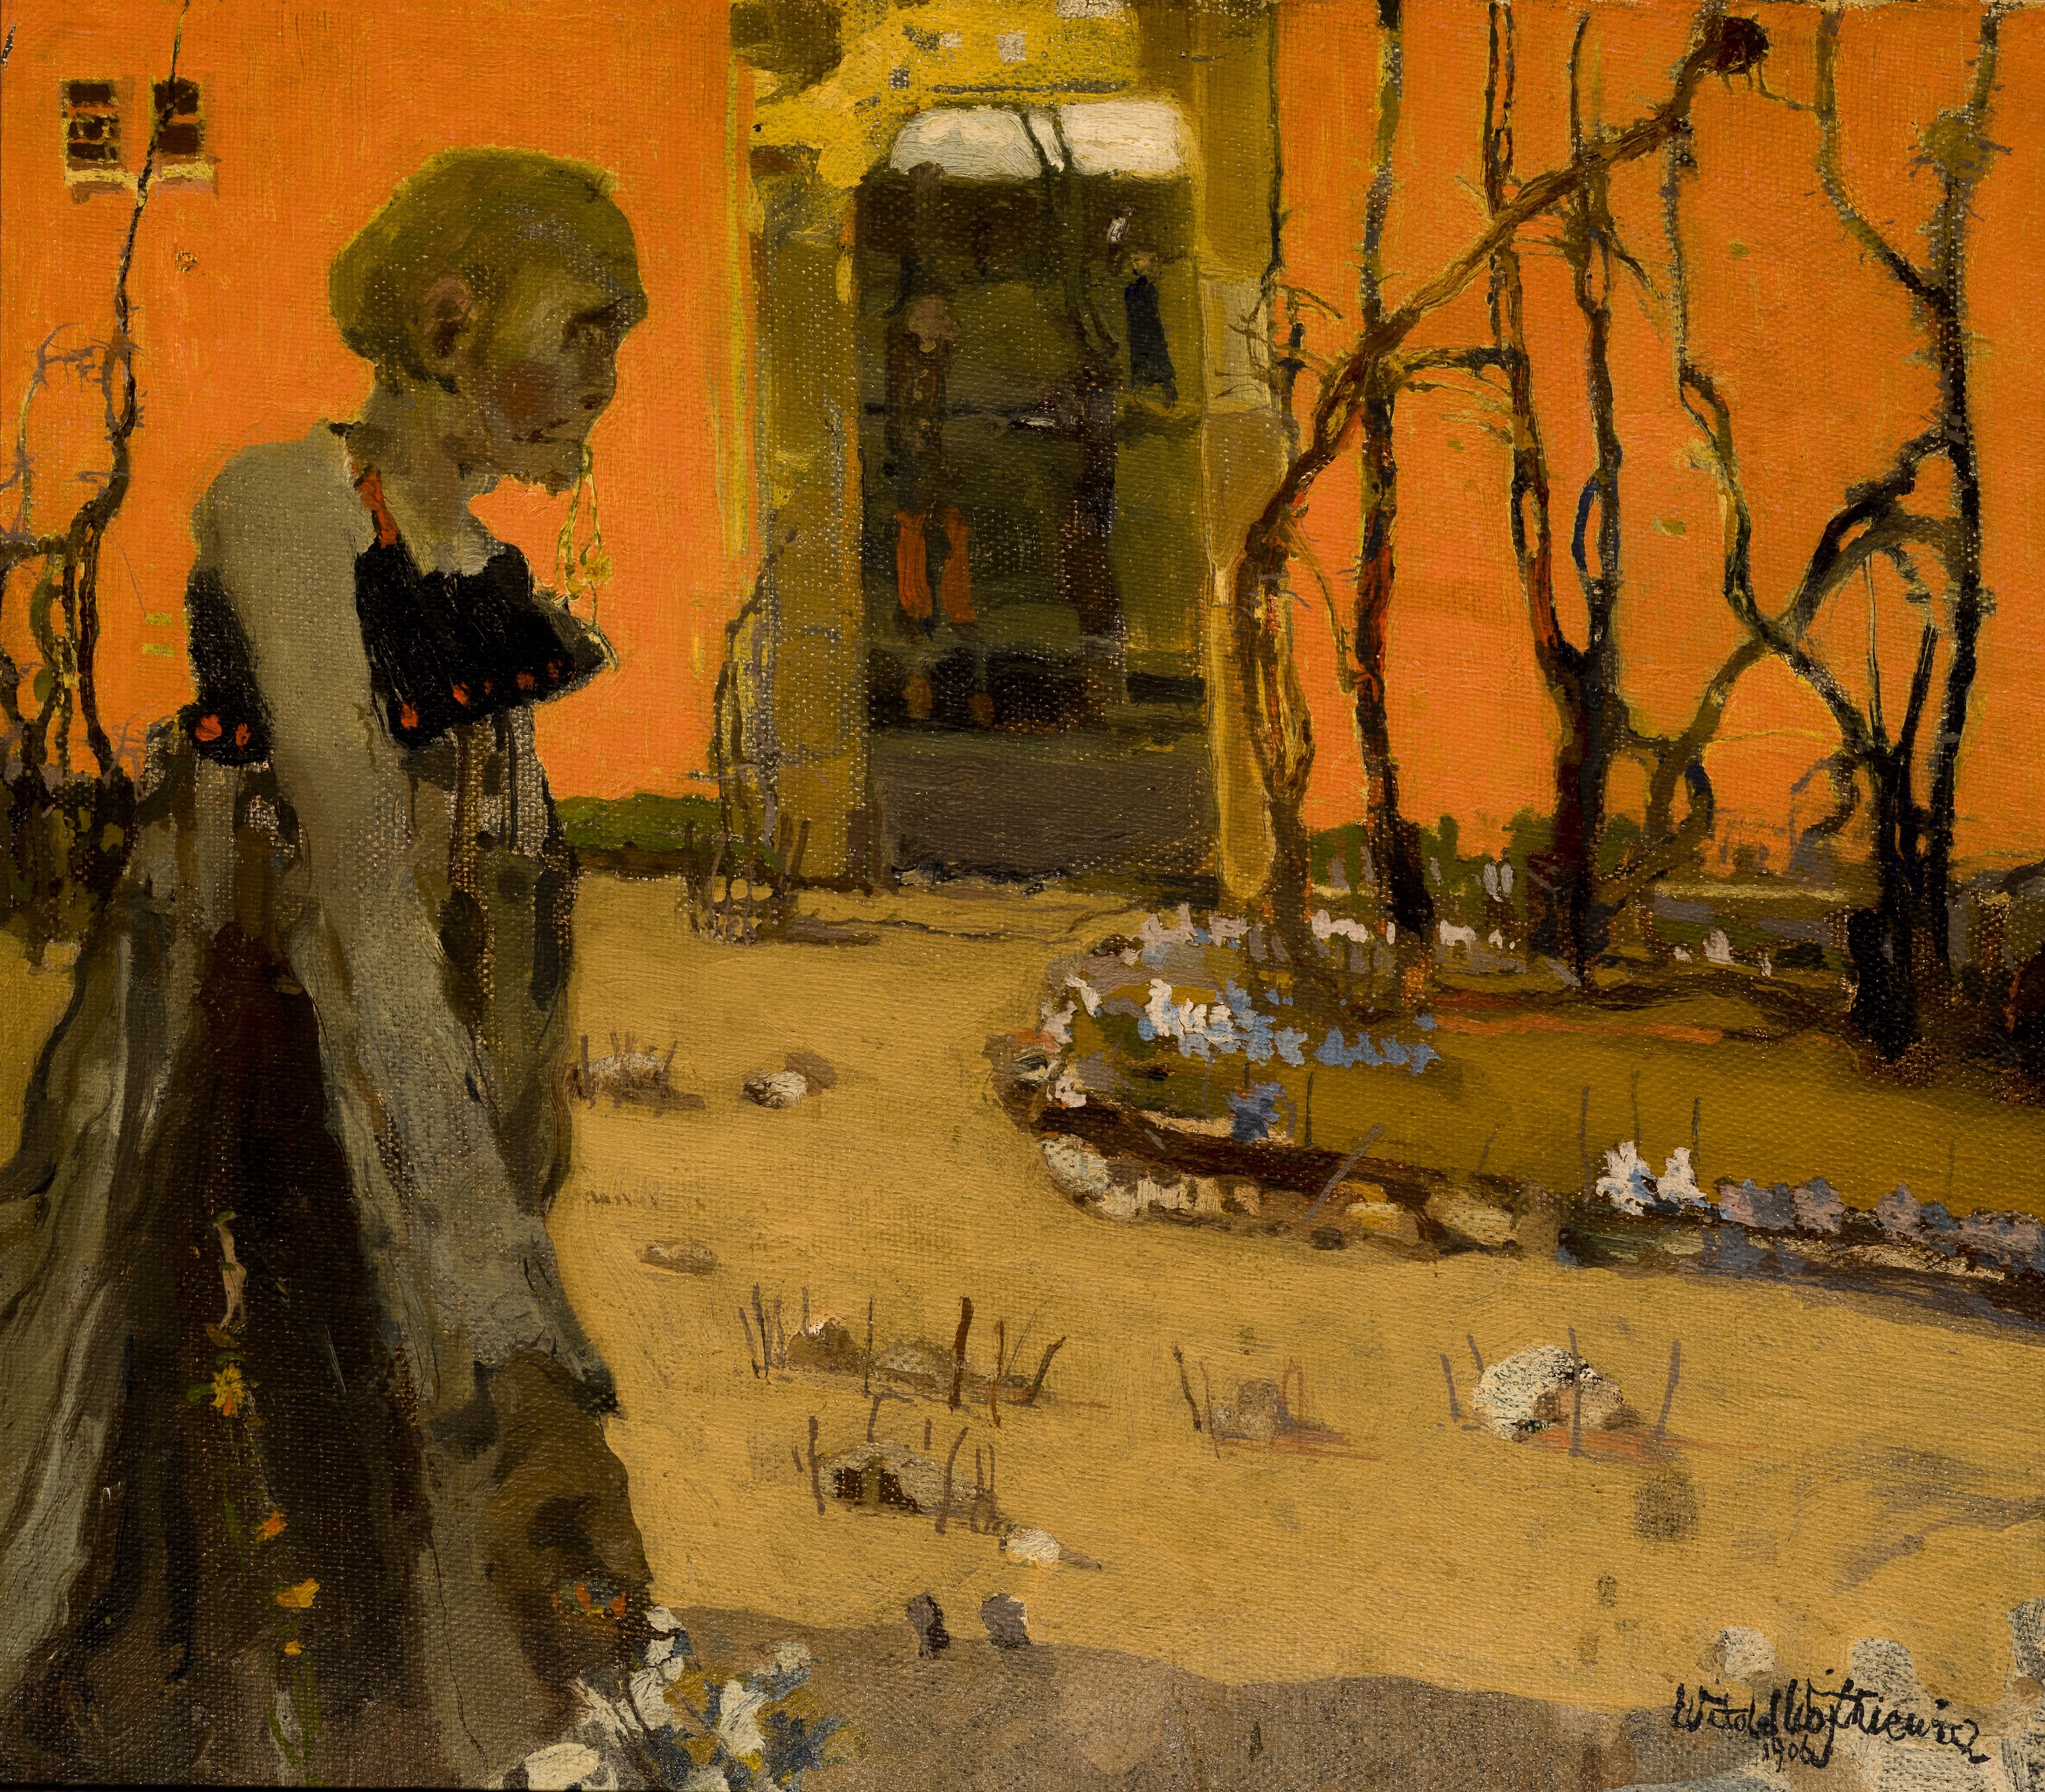 Fantasia by Witold Wojtkiewicz - 1906 - 55 x 40 cm 